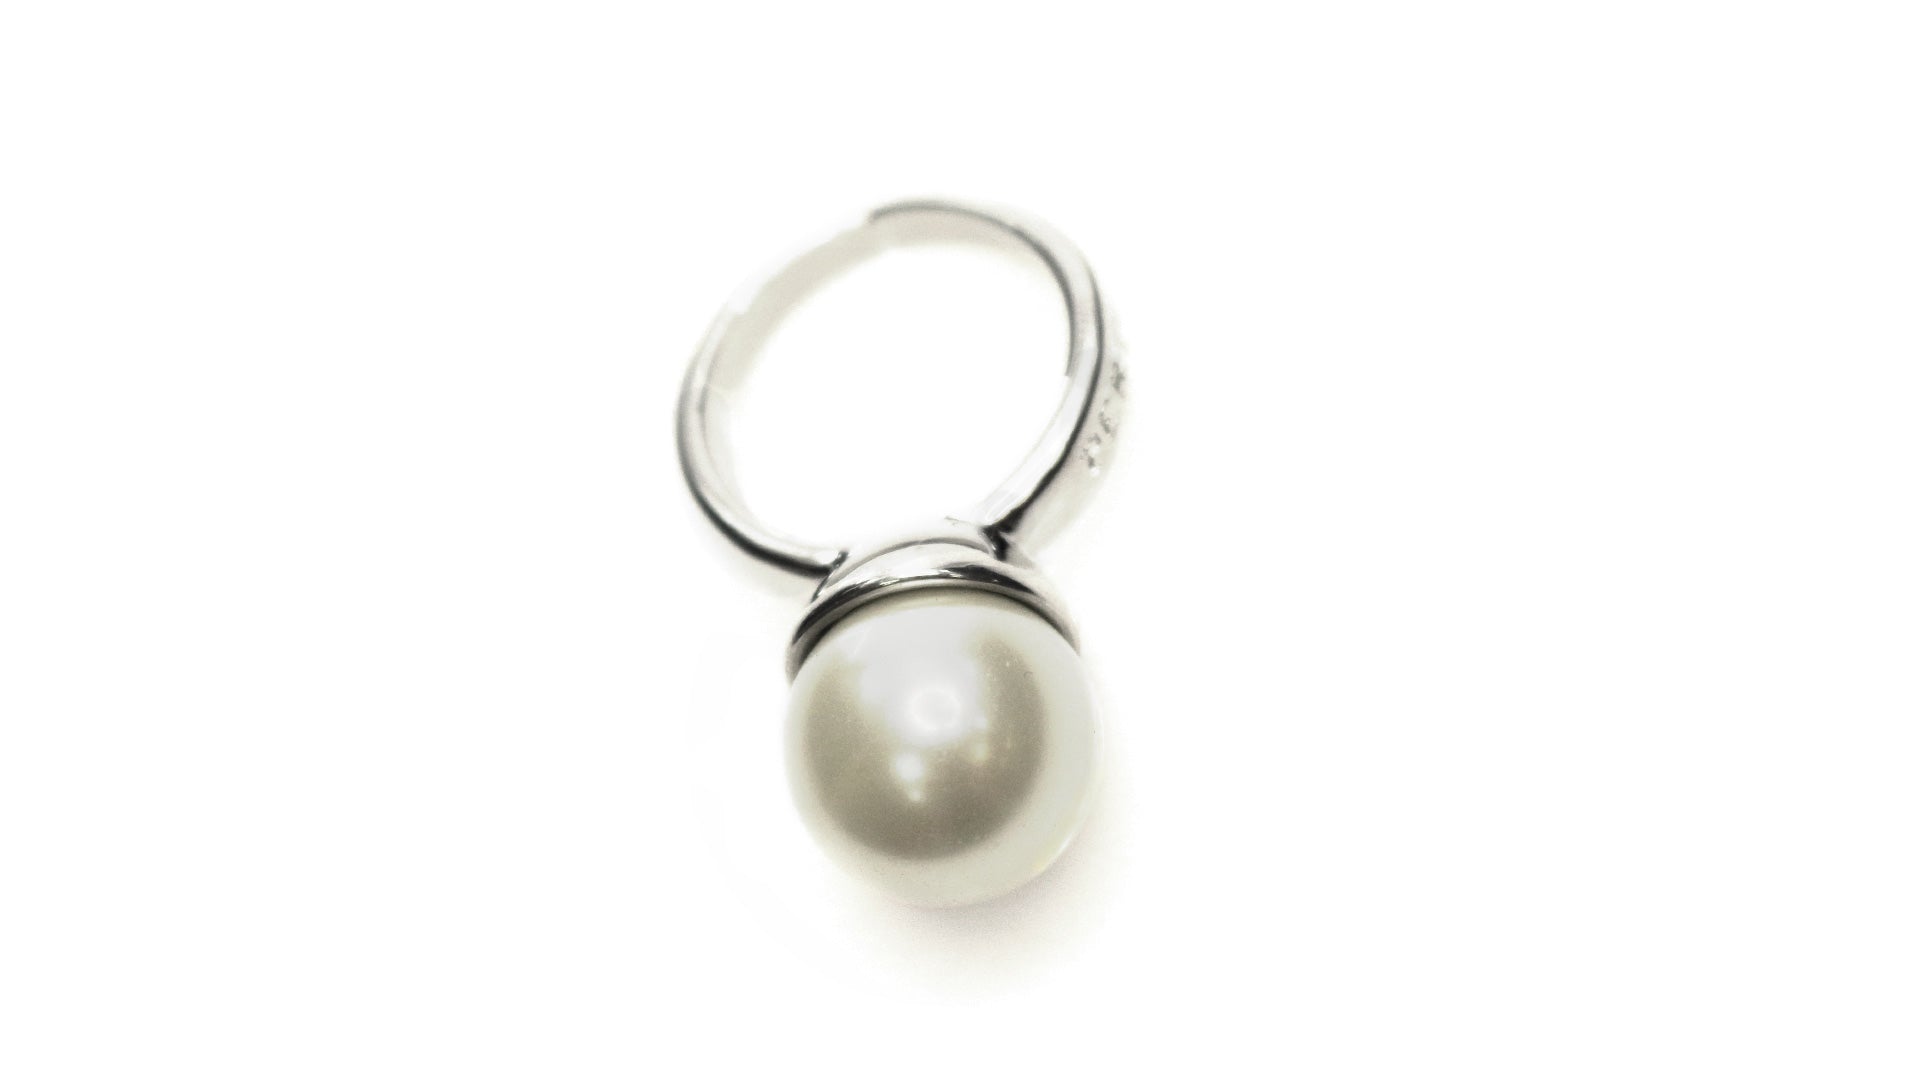 Élégance rehaussée : bague réglable Pertegaz en métal avec perles de cristal, écrin avec le logo et étui en similicuir.